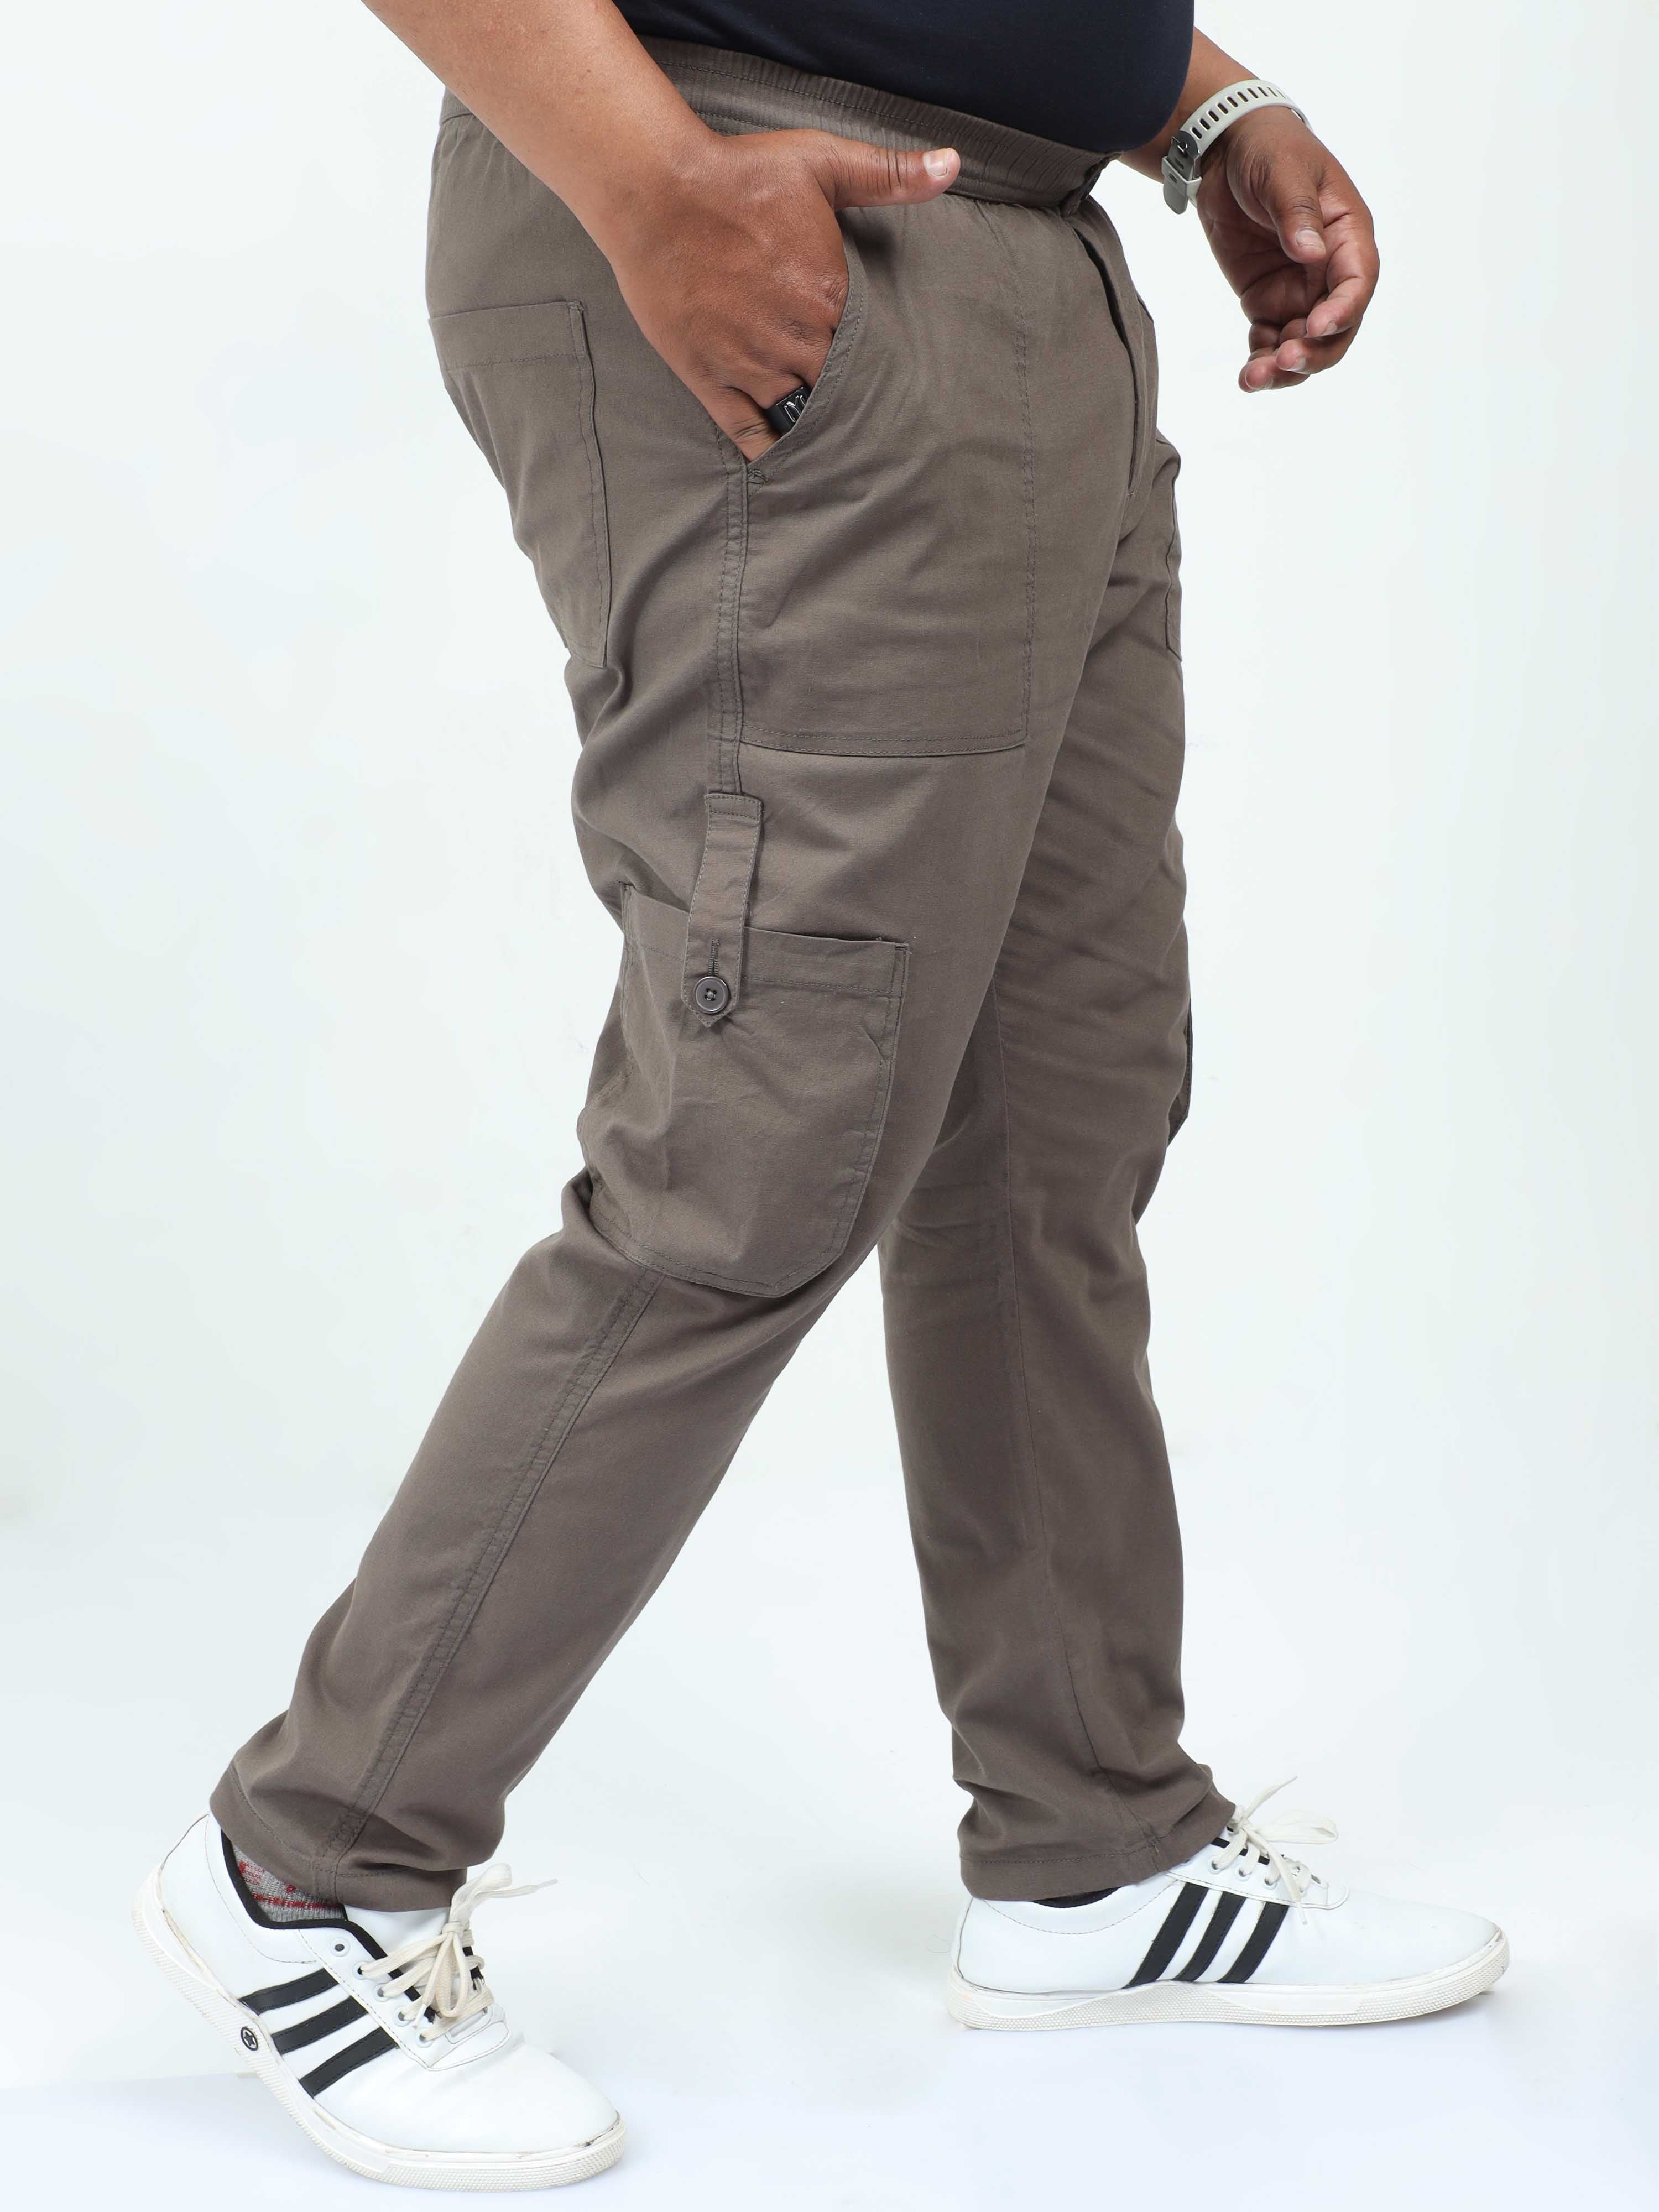 Buy Men's Black Oversized Plus Size Cargo Pants Online at Bewakoof